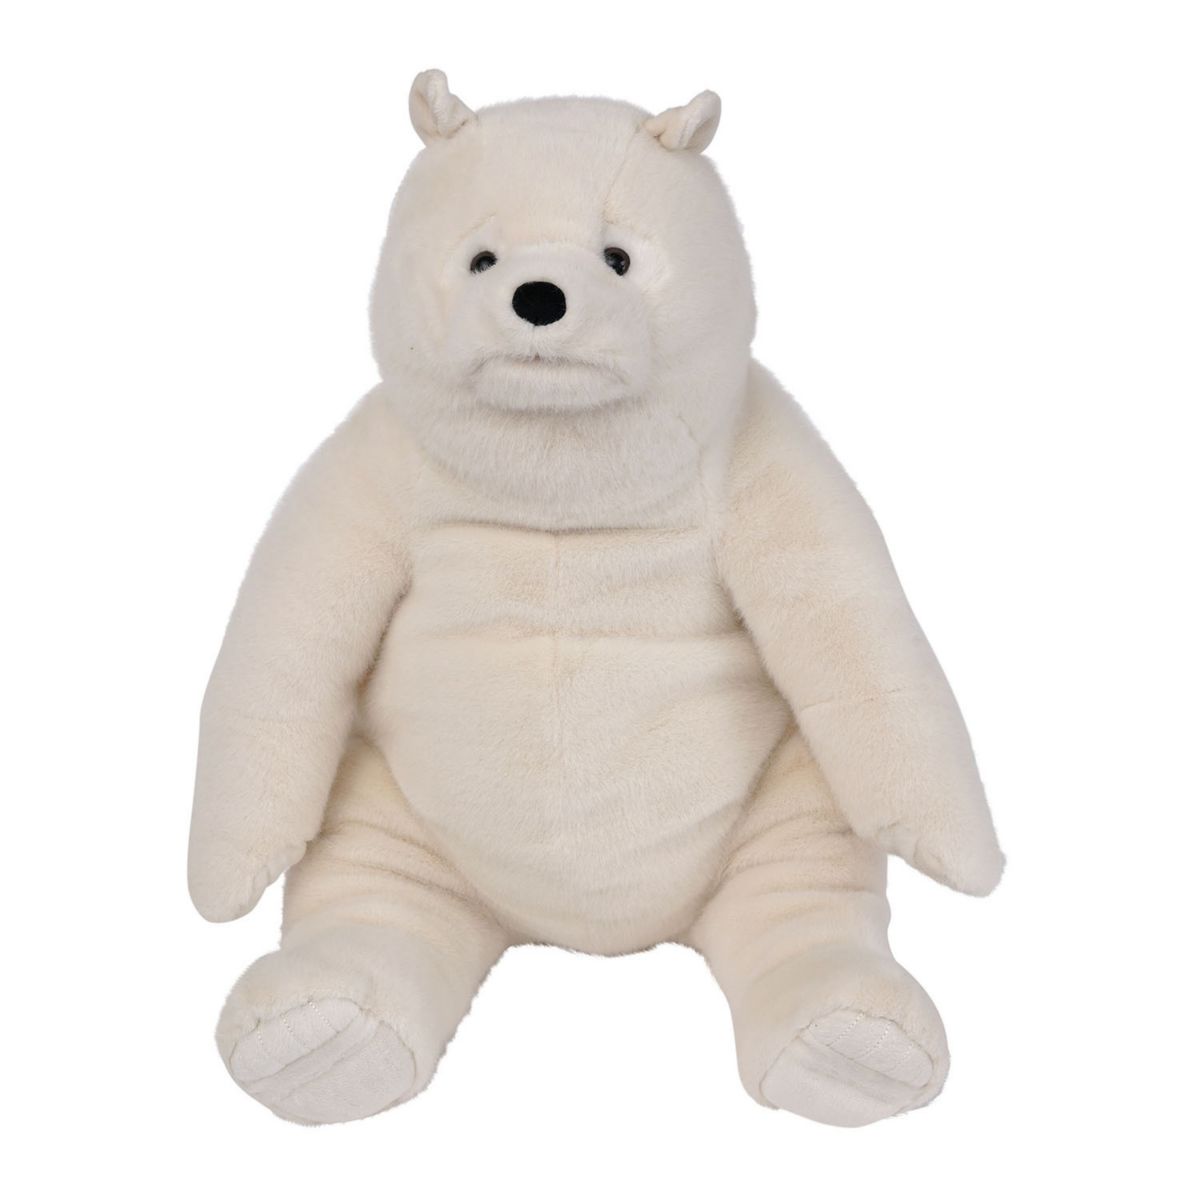 Manhattan Toy 18-дюймовый белый медведь Кадьяк Плюшевая игрушка Manhattan Toy